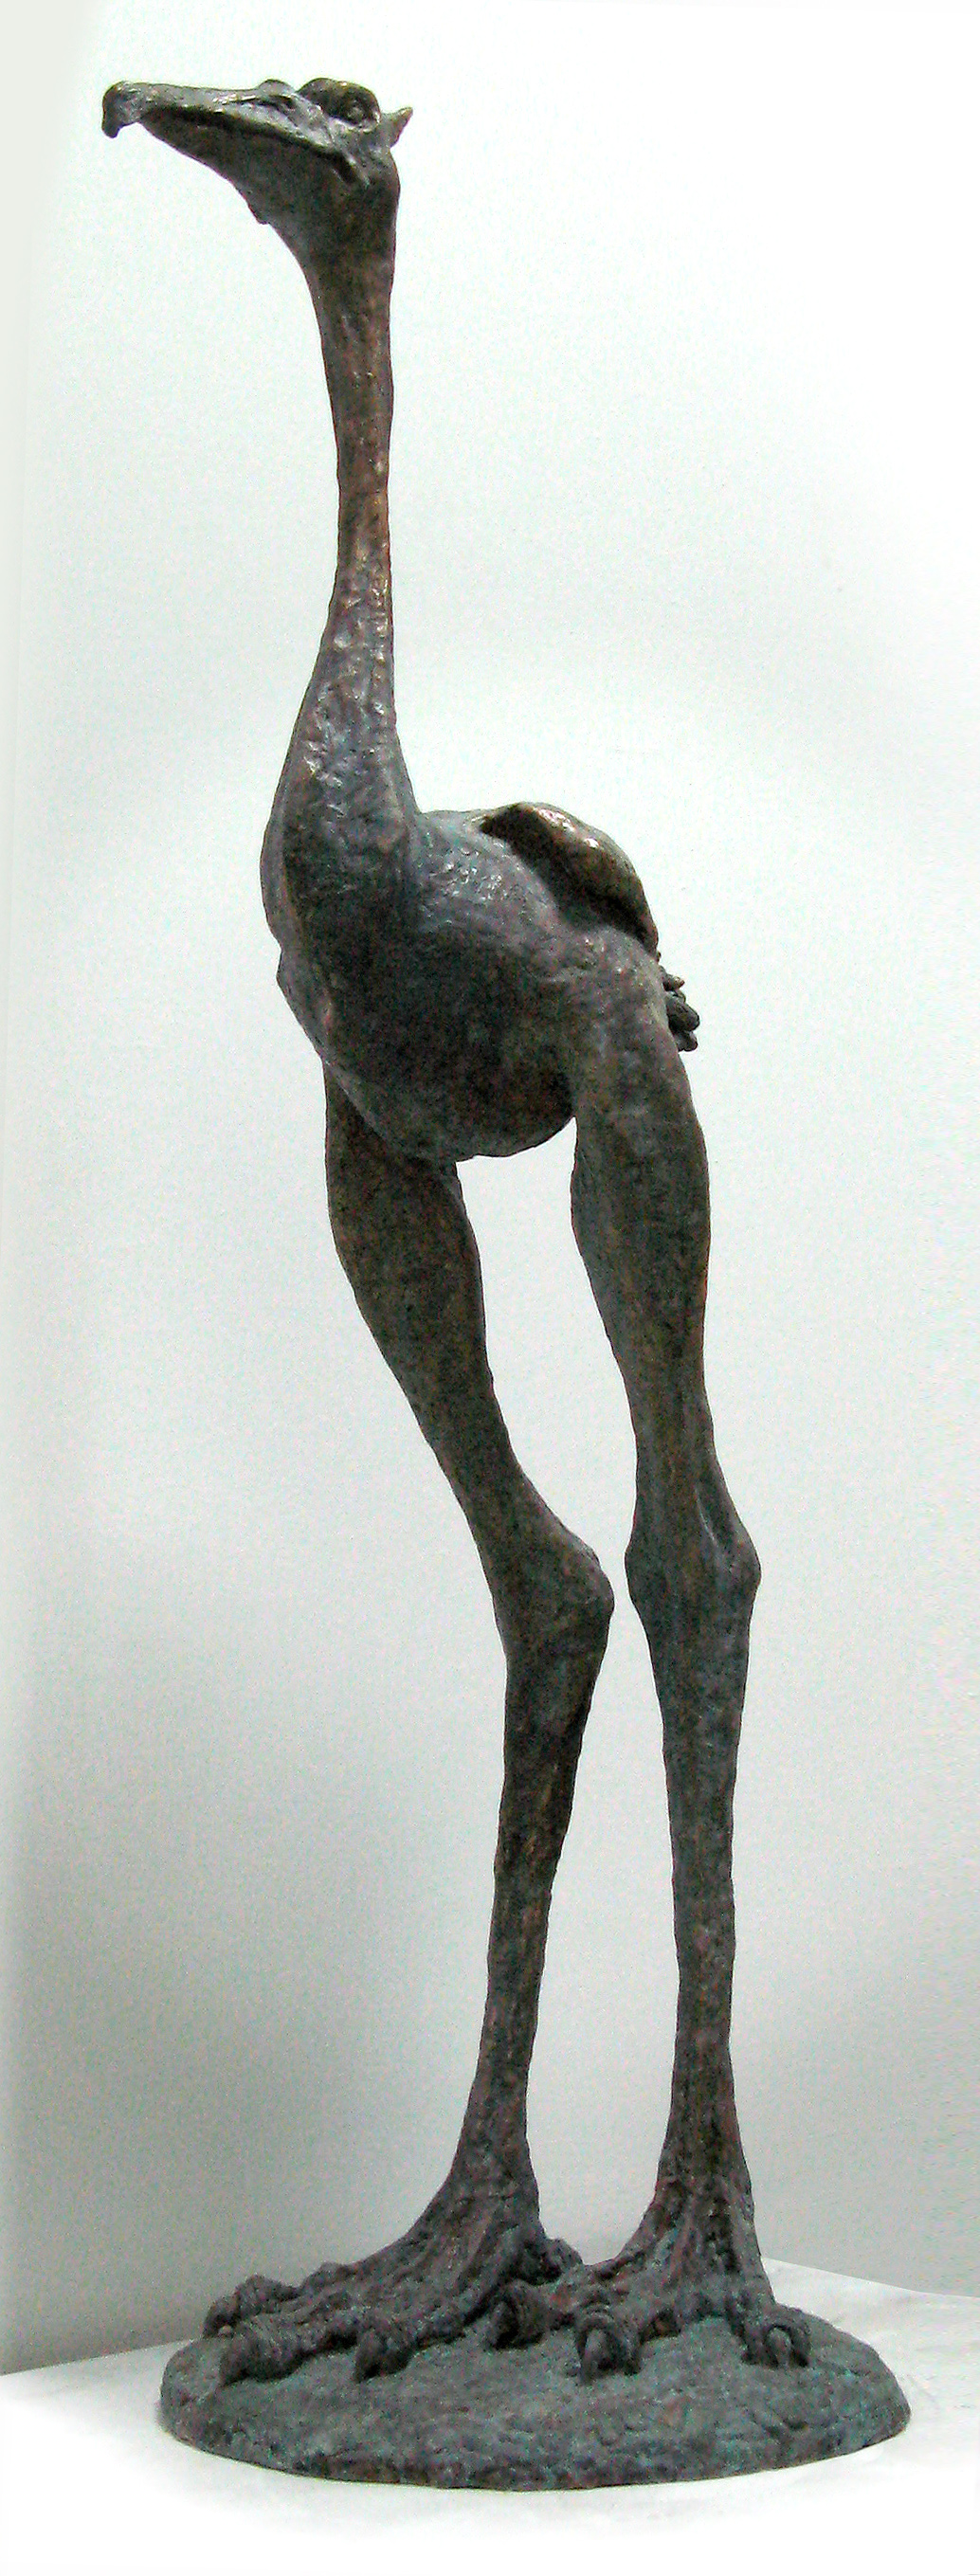 Екатерина Яковлева. "Птица", 2008. Бронза, 105х32х35 см. Фото из архива Екатерины Яковлевой